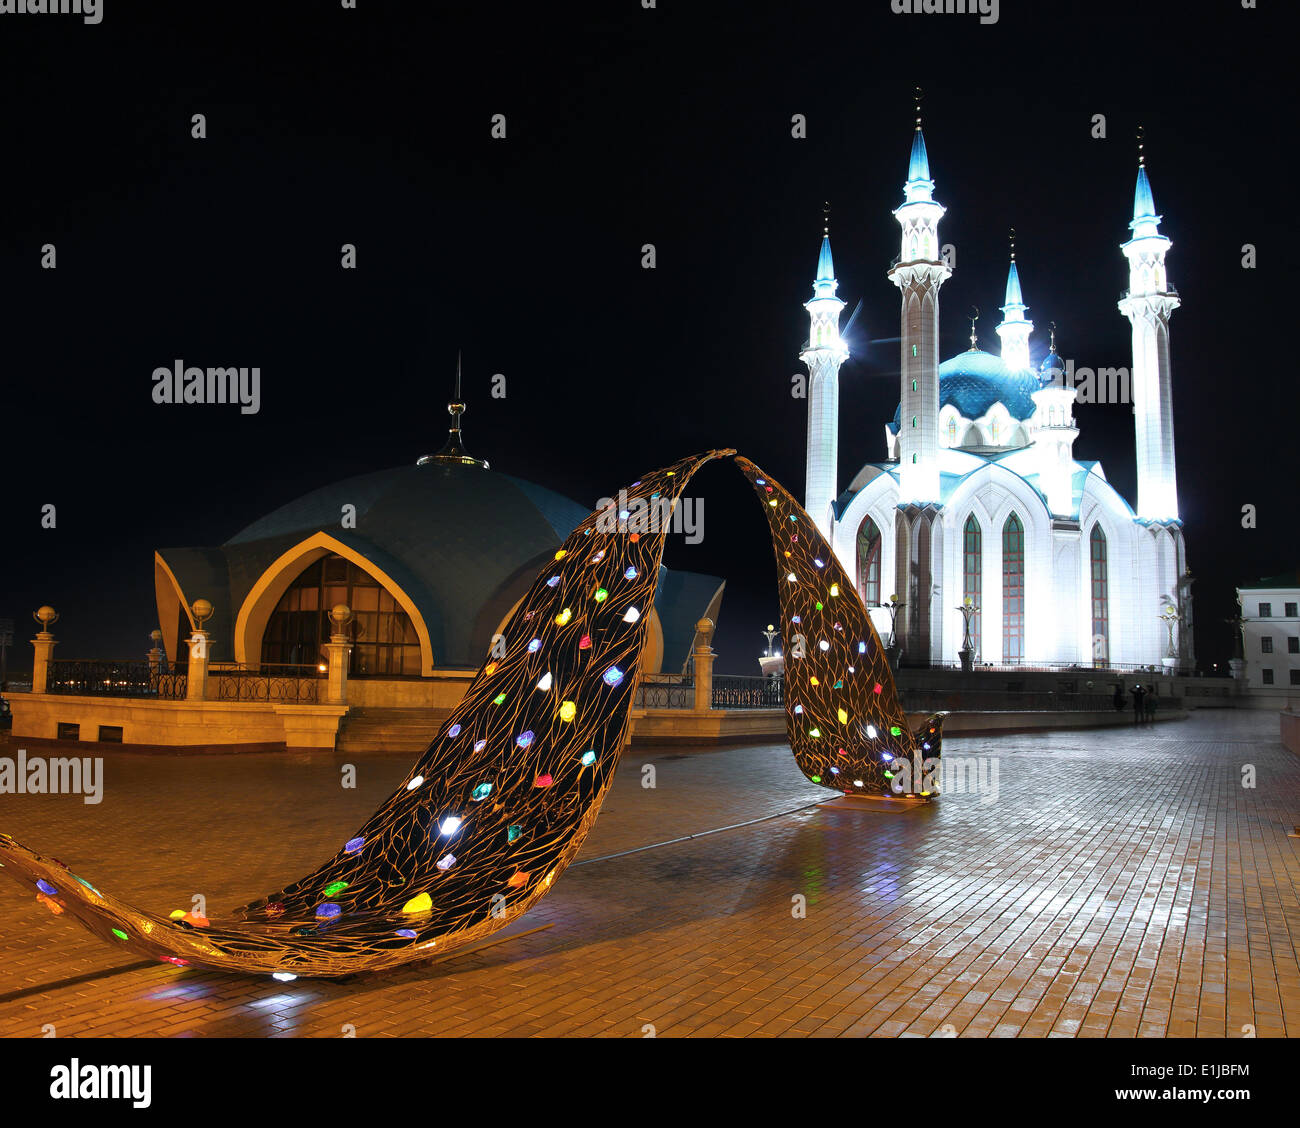 La mosquée kul sharif à Kazan kremlin la nuit Banque D'Images